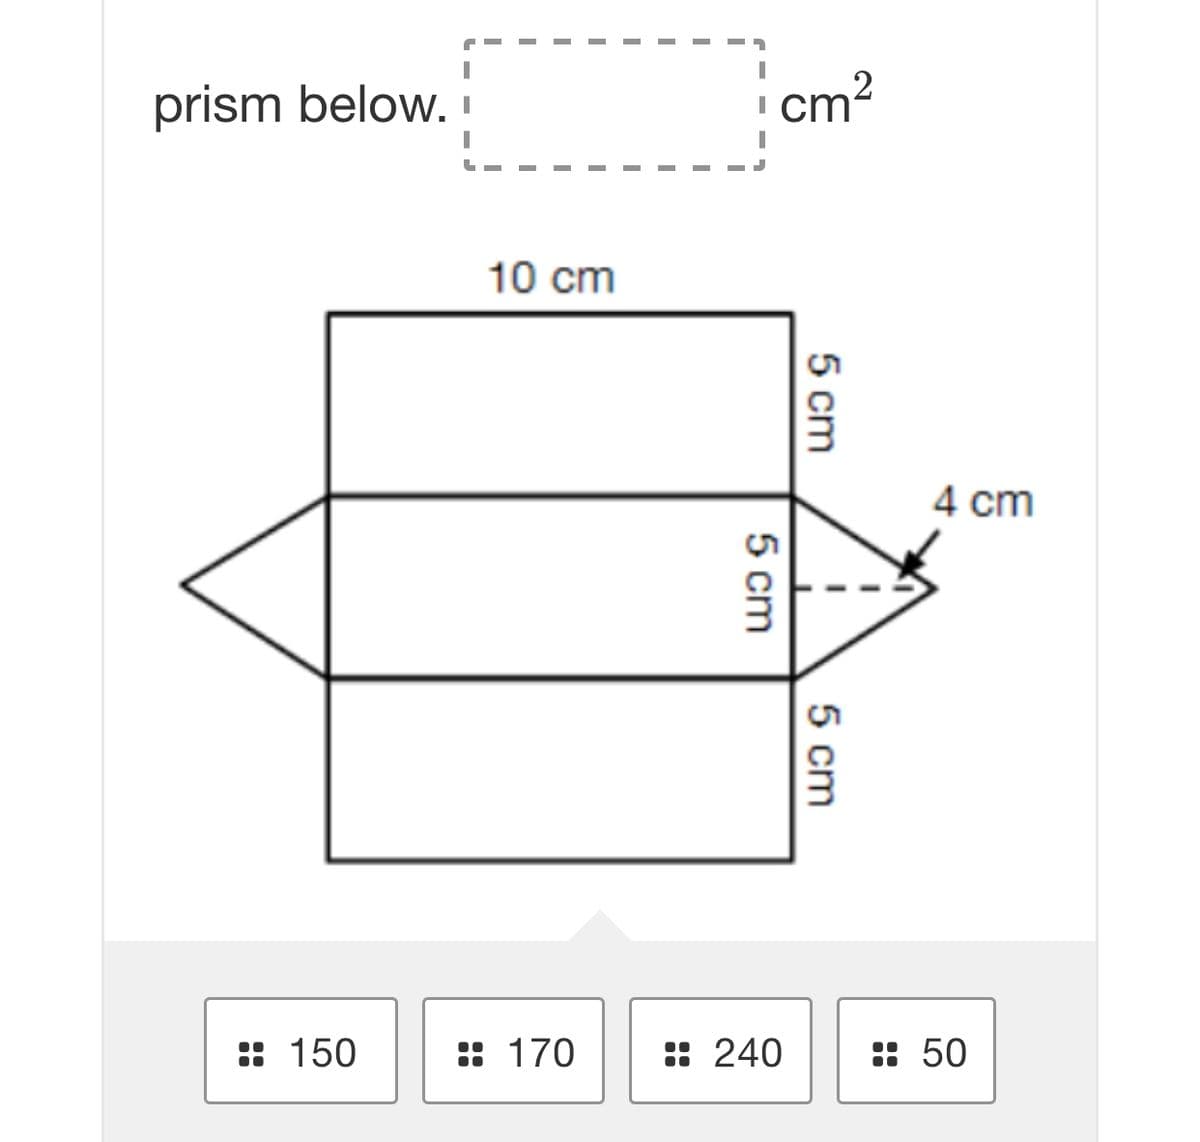 prism below. i
cm?
10 cm
4 cm
:: 150
:: 170
: 240
: 50
5 cm
5 cm
5 cm
